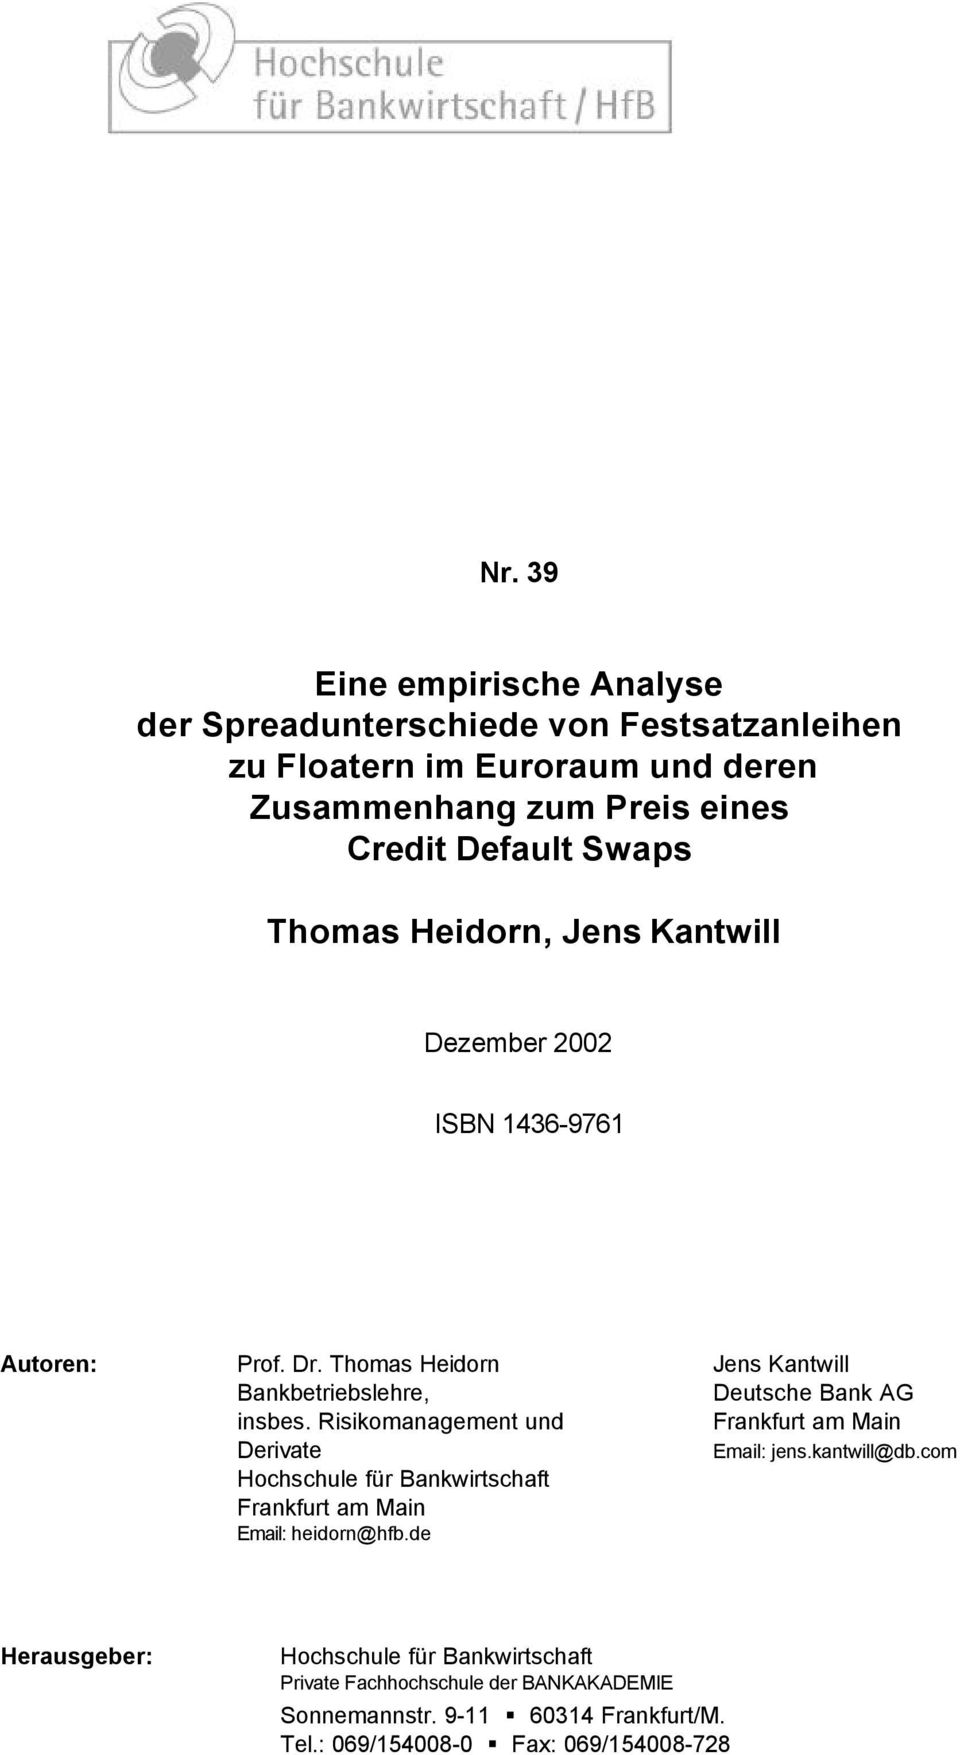 Thomas Heidorn Jens Kantwill Bankbetriebslehre, Deutsche Bank AG insbes. Risikomanagement und Frankfurt am Main Derivate Email: jens.kantwill@db.